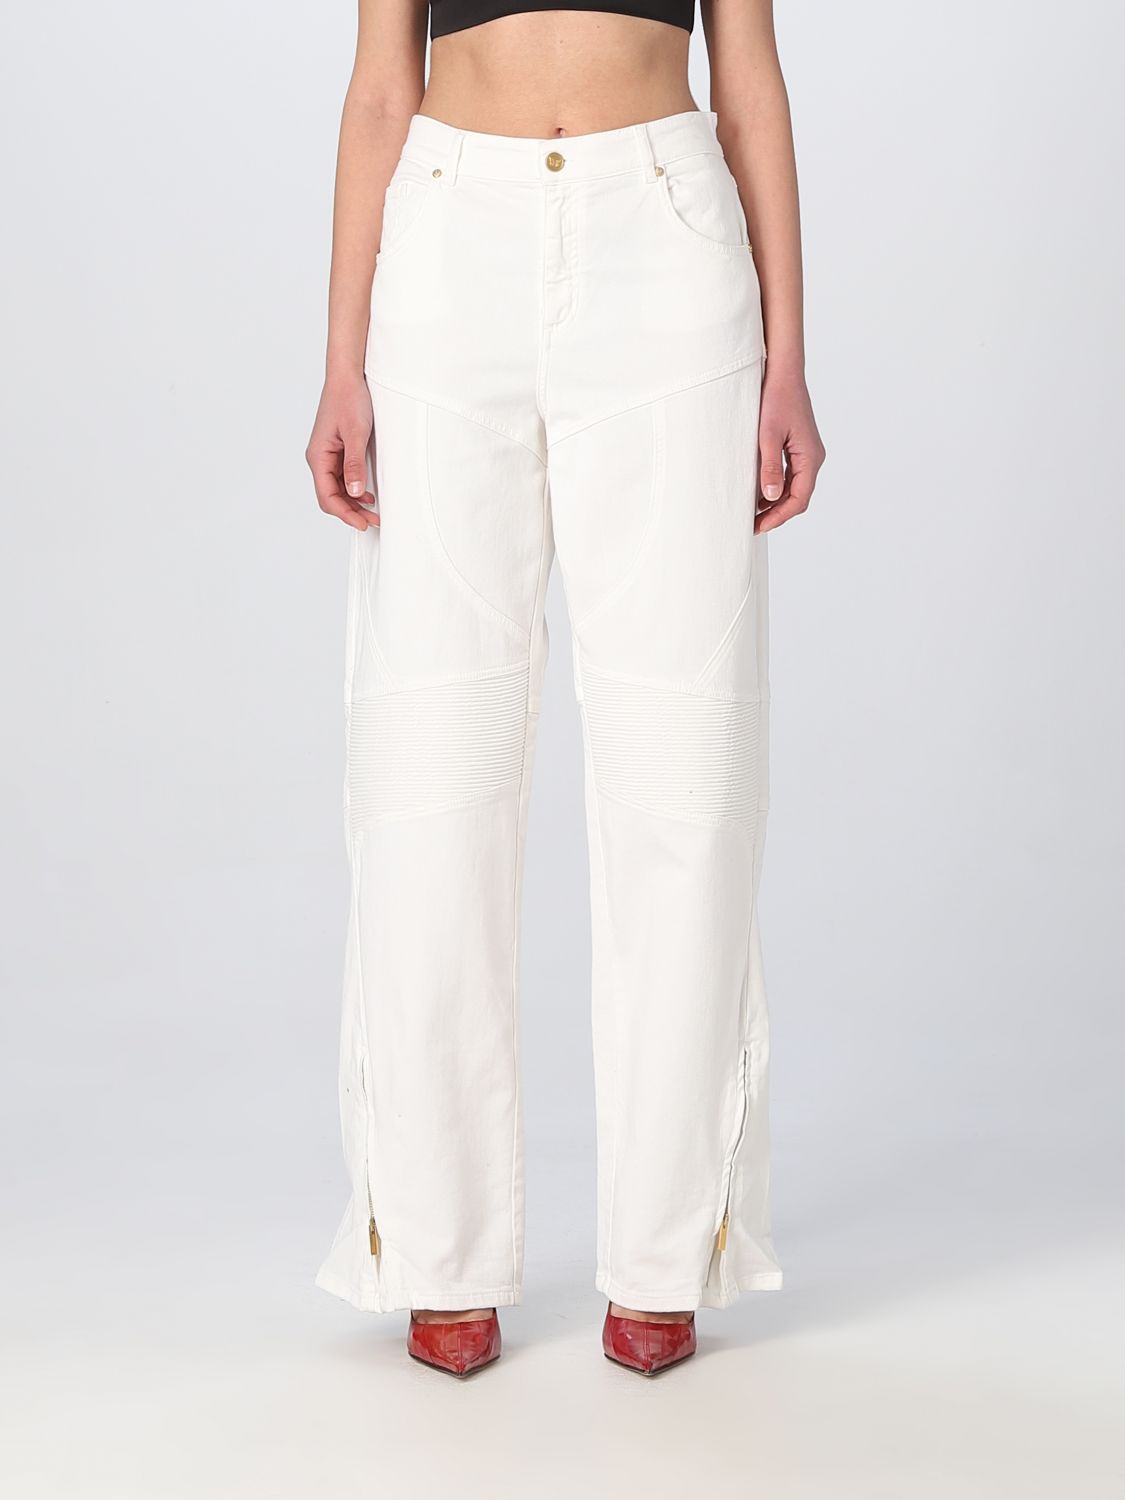 Pantalon Blumarine: Pantalon Blumarine femme blanc 1